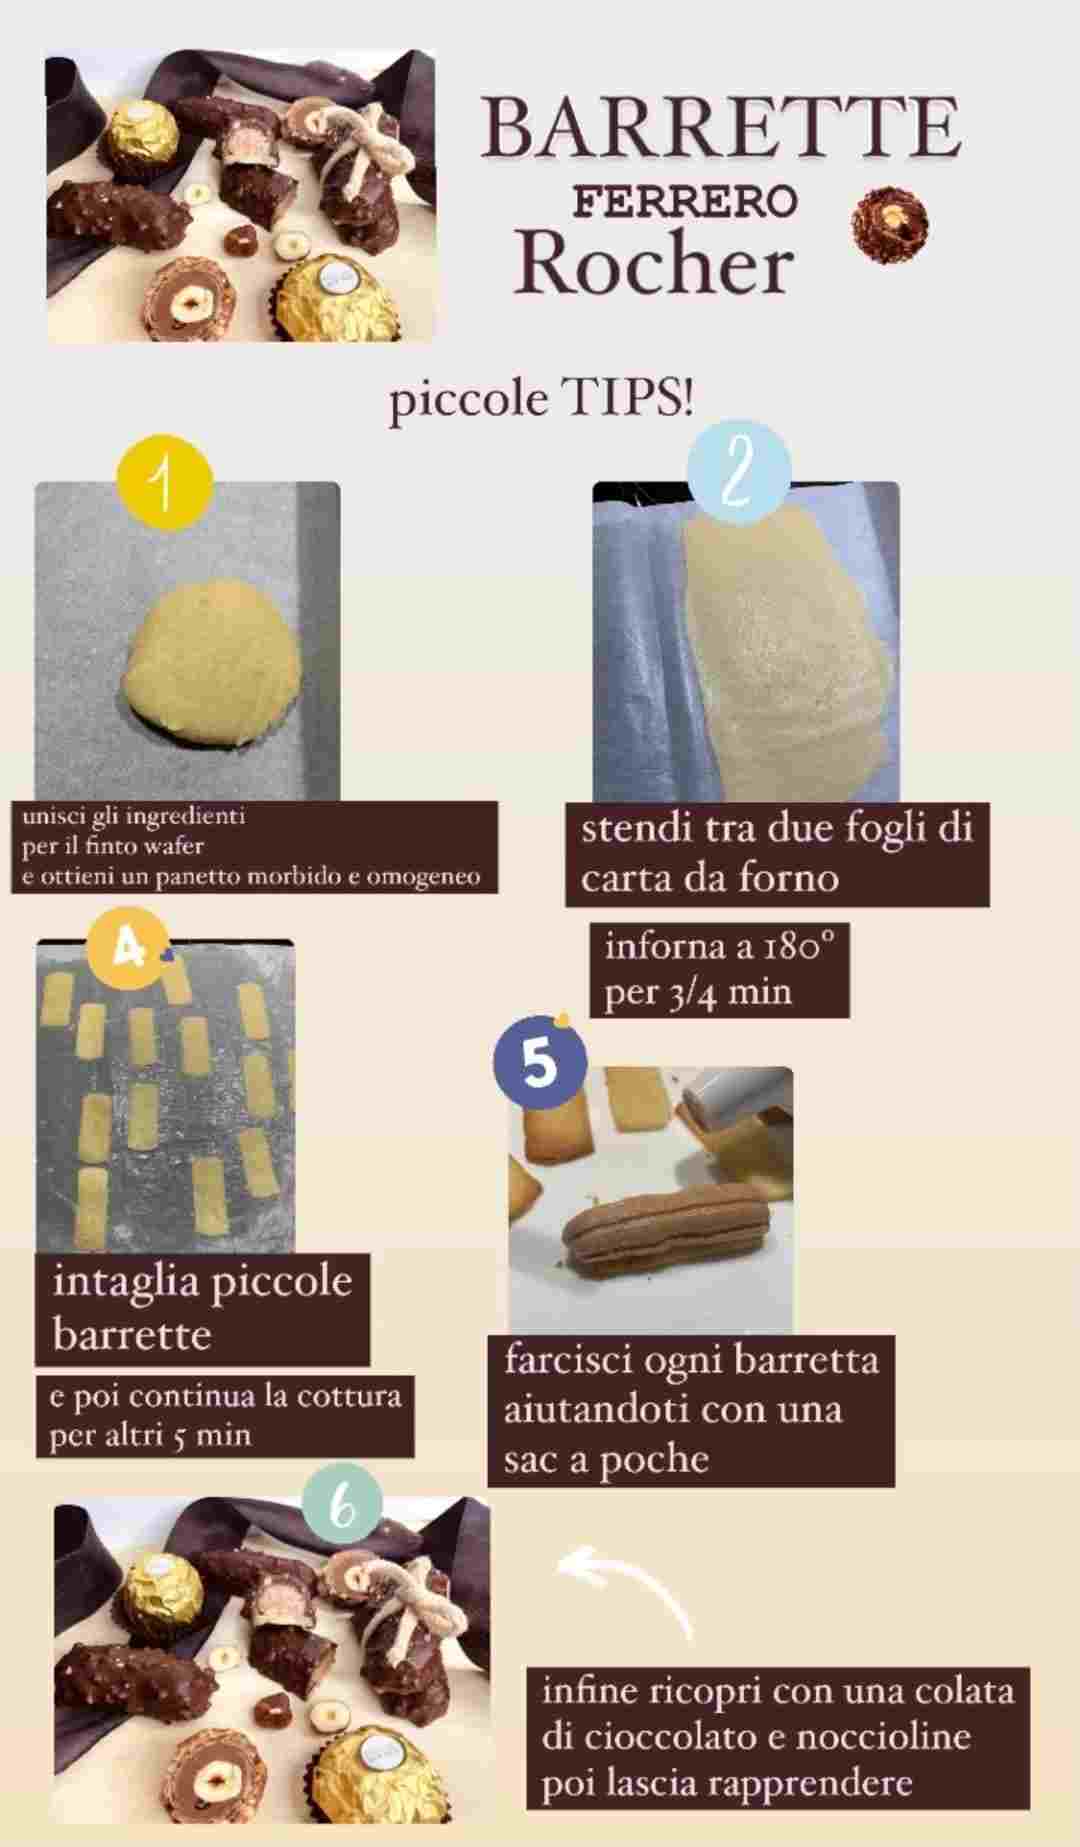 Barrette Ferrero rocher tips